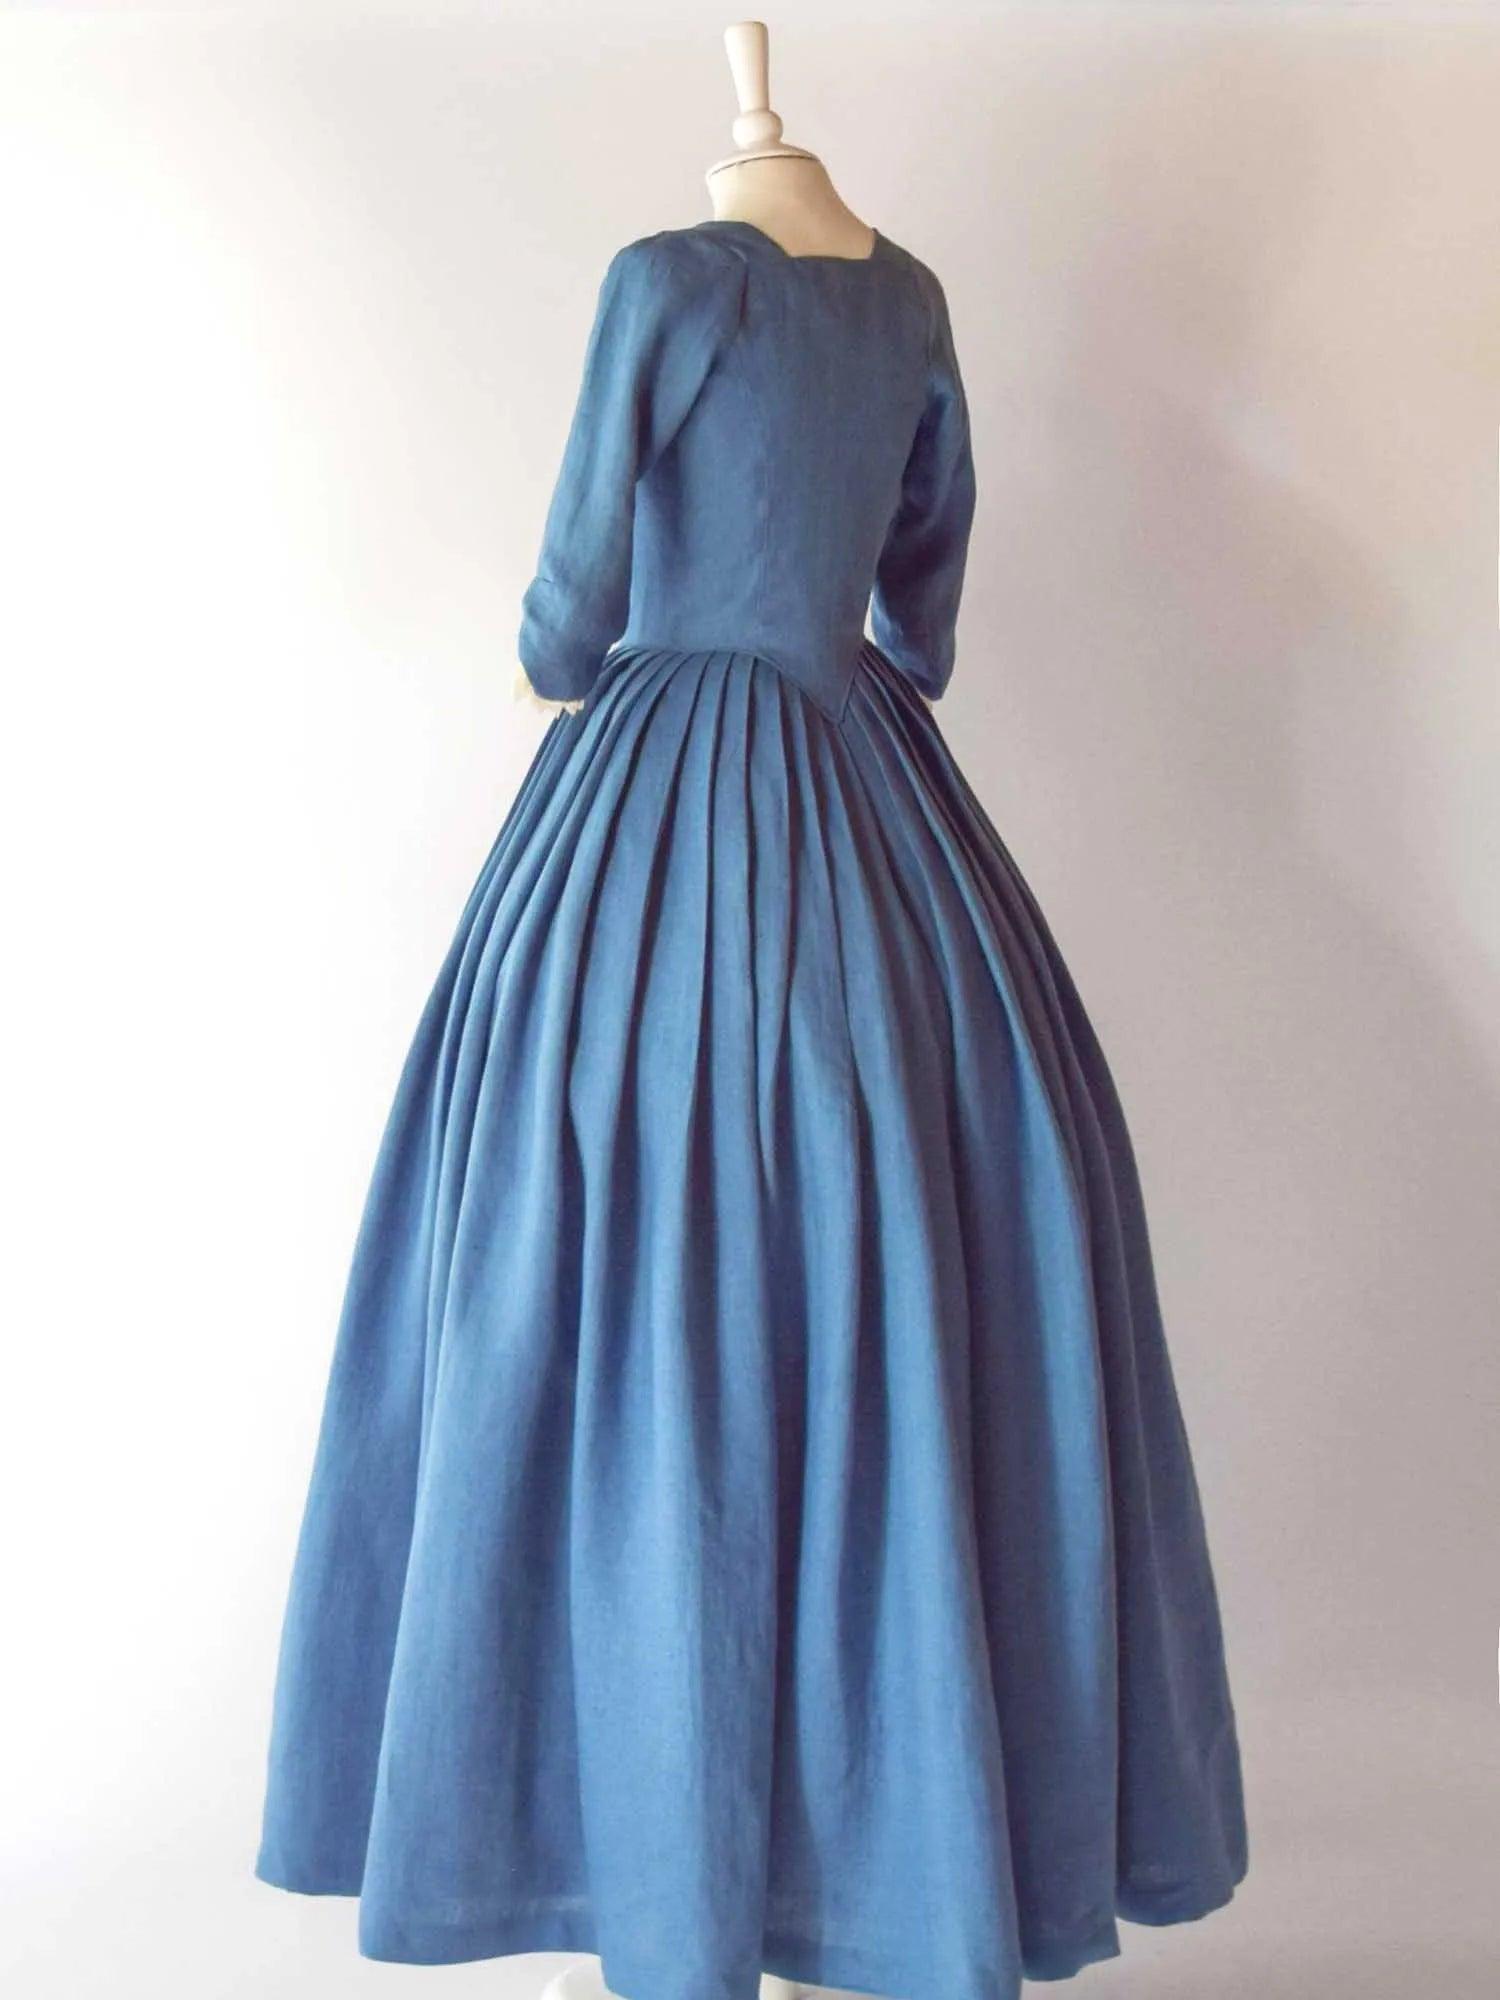 18th Century Overdress in Steel Blue Linen &amp; Skirt - Atelier Serraspina